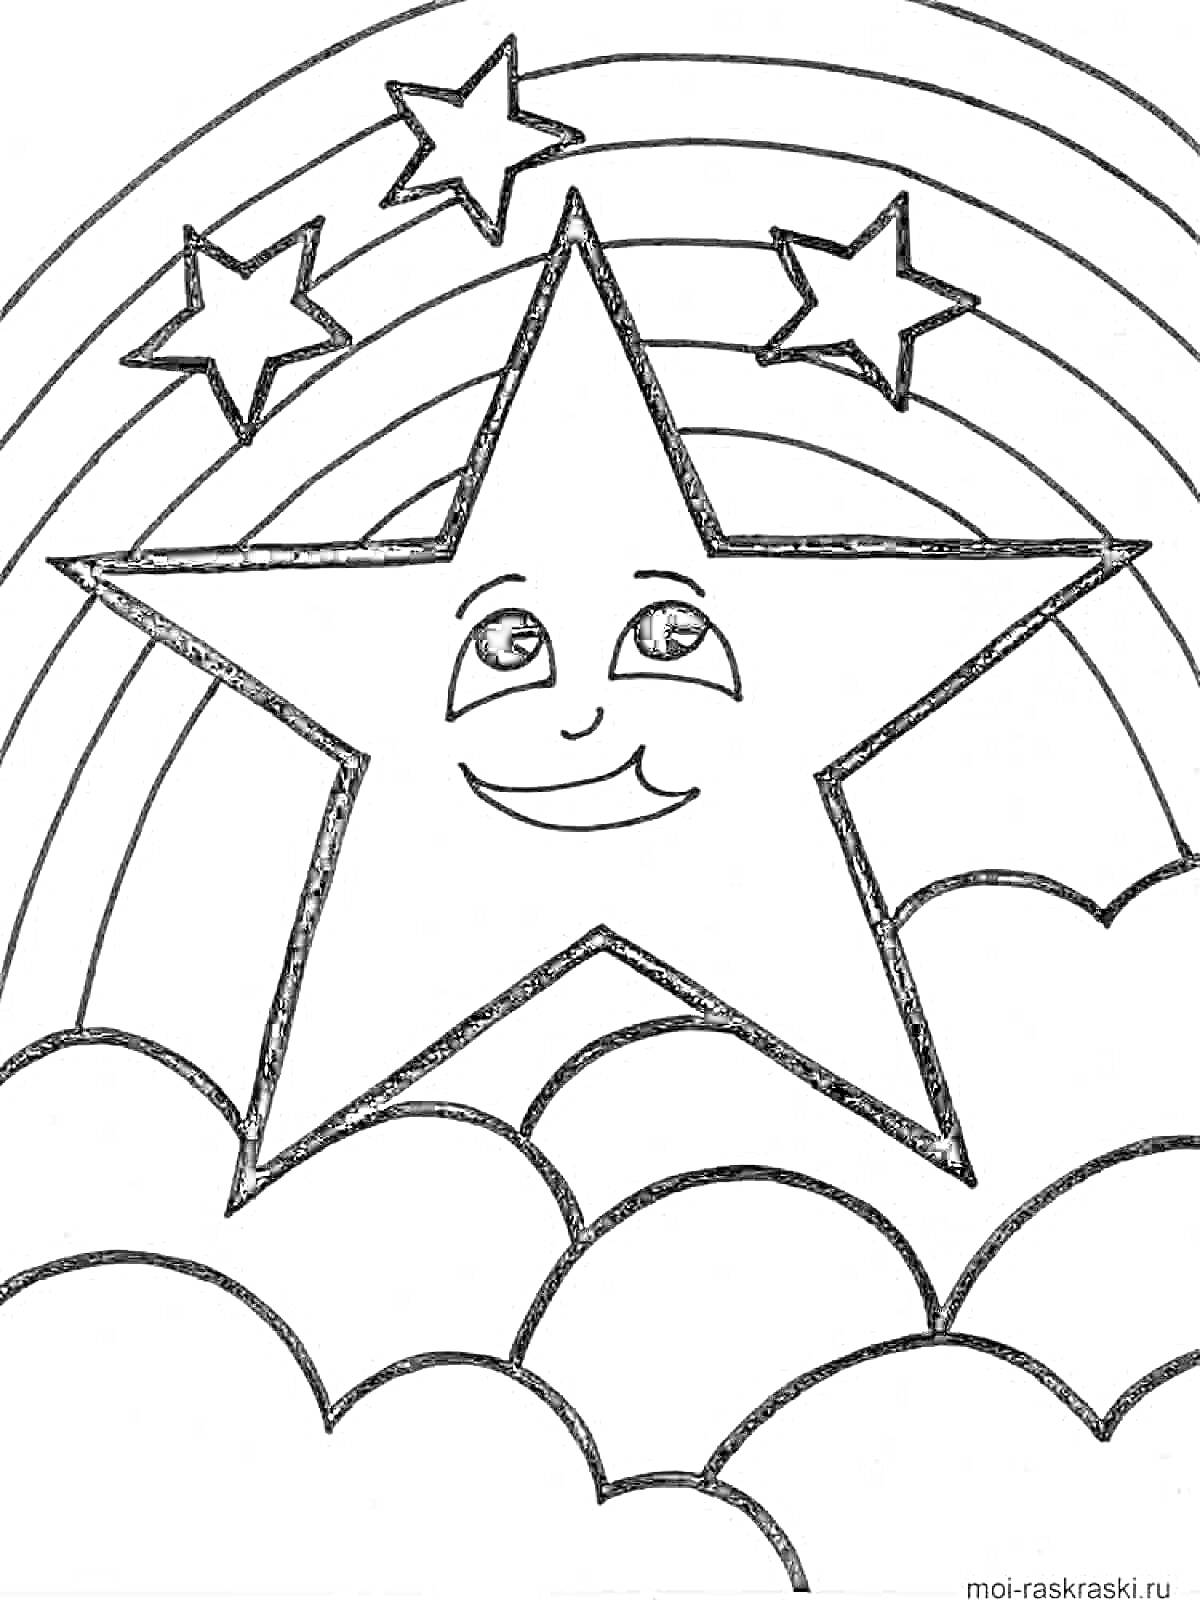 Большая улыбающаяся звезда на фоне радуги с тремя маленькими звёздами и облаками